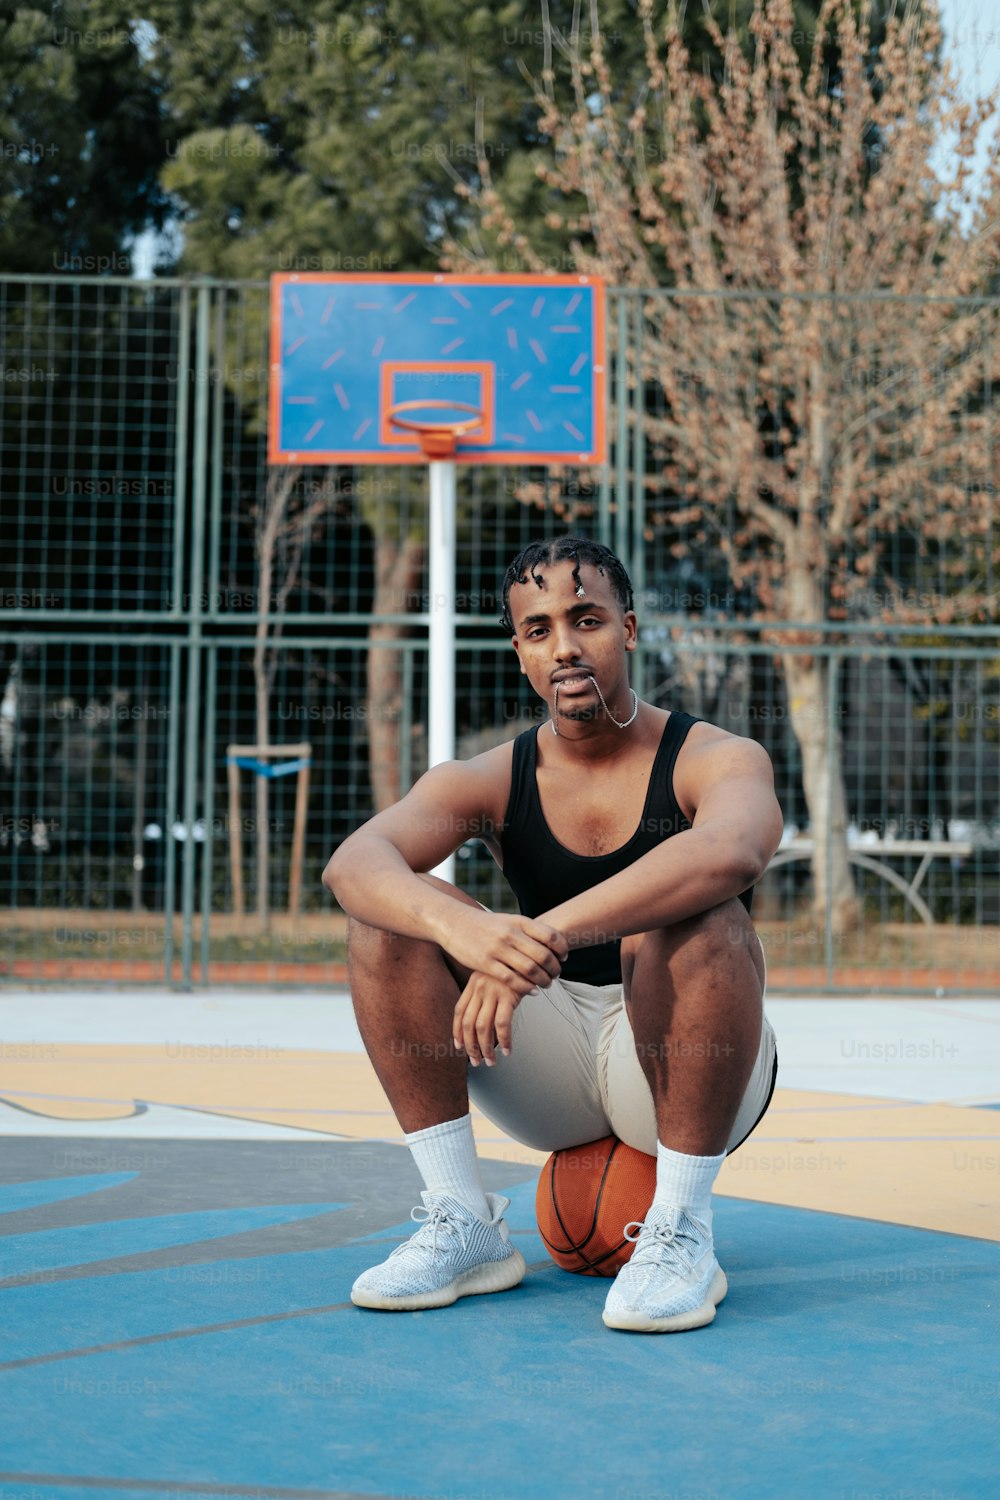 Ein Mann, der auf einem Basketballplatz sitzt und einen Basketball hält